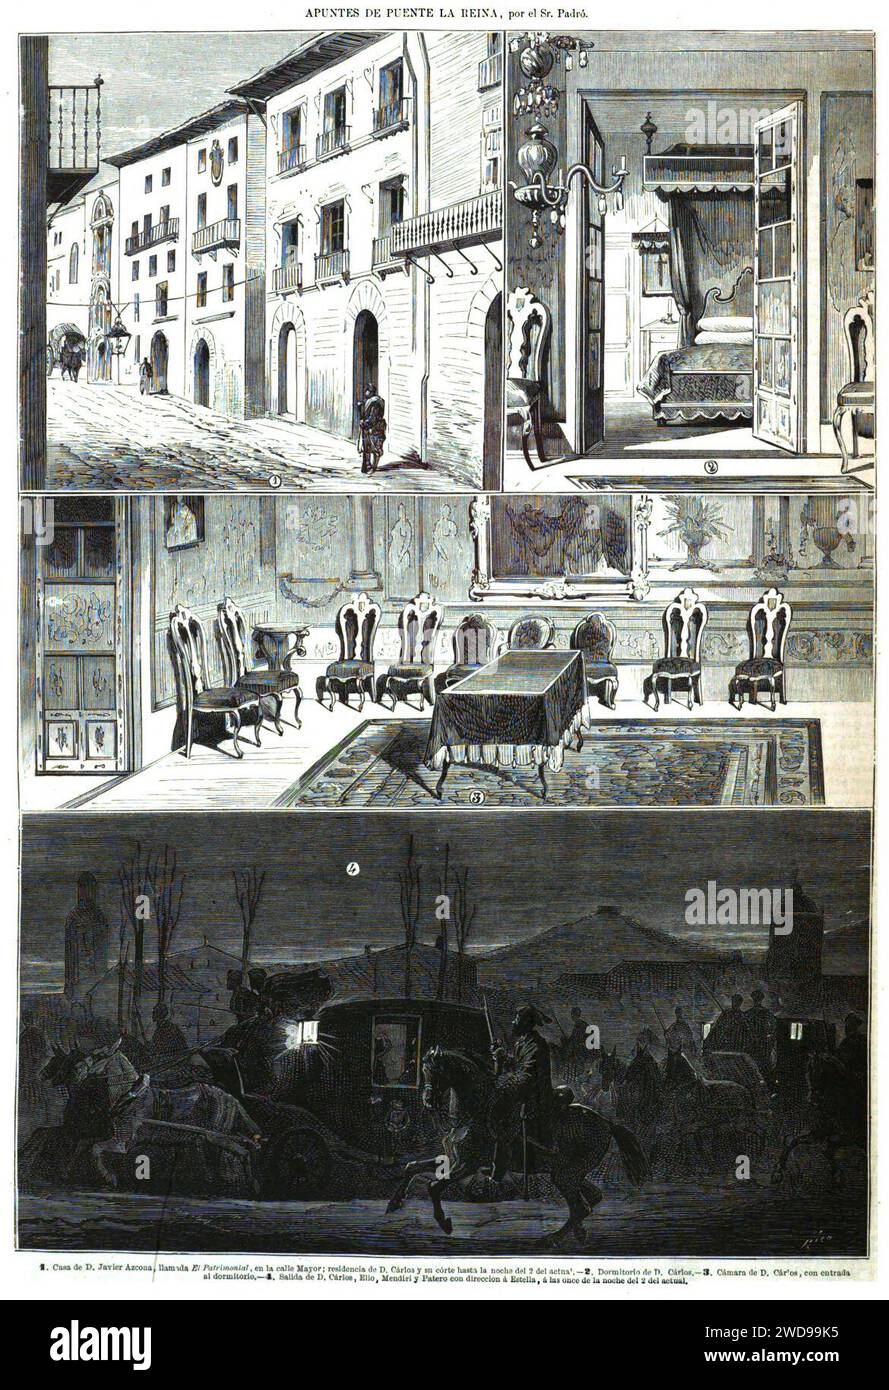 22.02.1875, La Ilustración Española y Americana, Apuntes de Puente la Reina, por Padró. Stockfoto